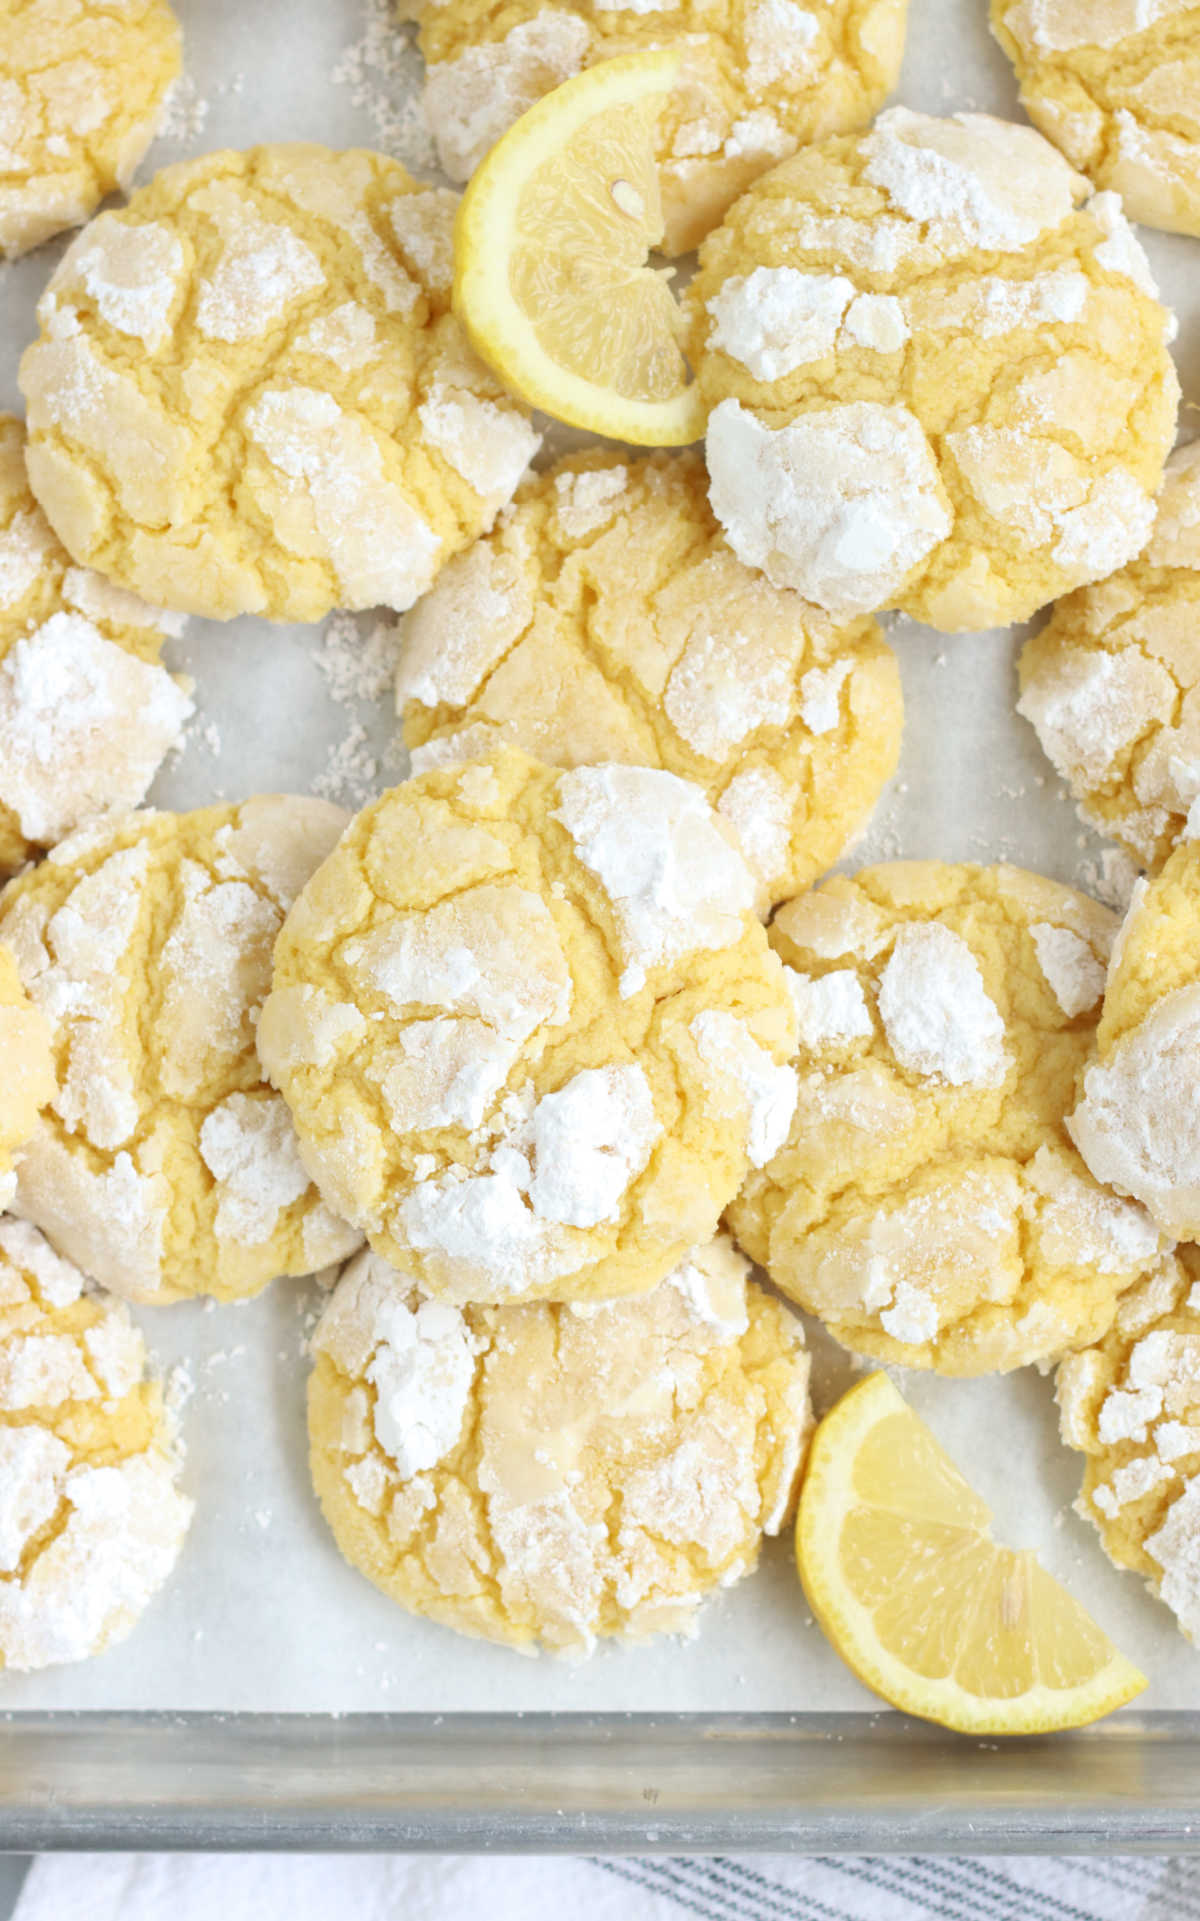 Lemon cookies on half sheet pan with lemon wedges.